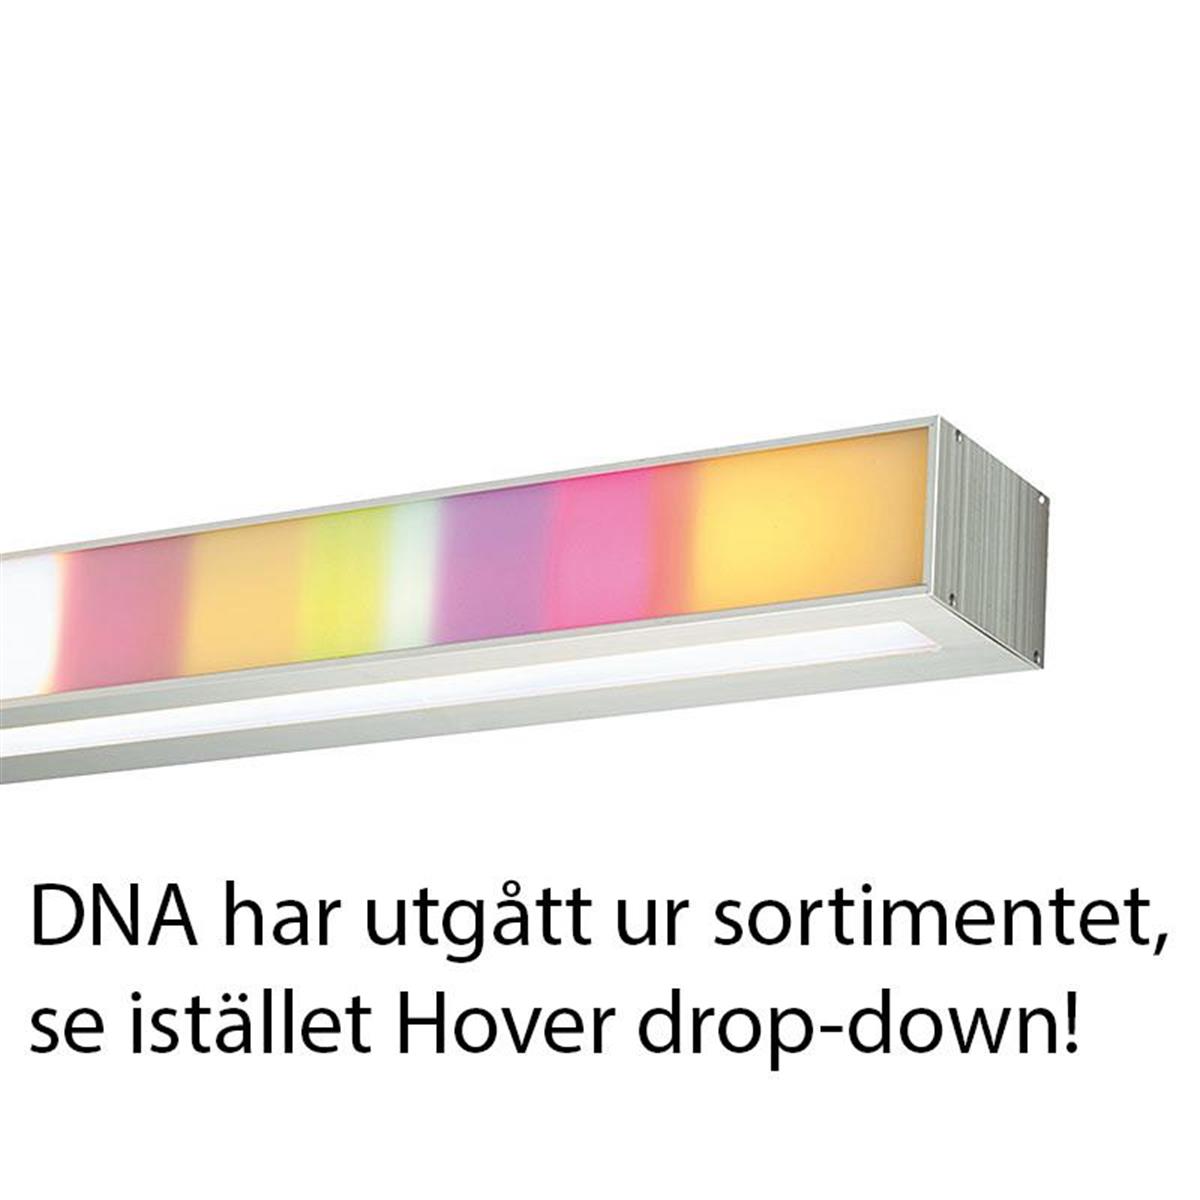 DNA, DNA har utgått och ersätts av Hover drop-down